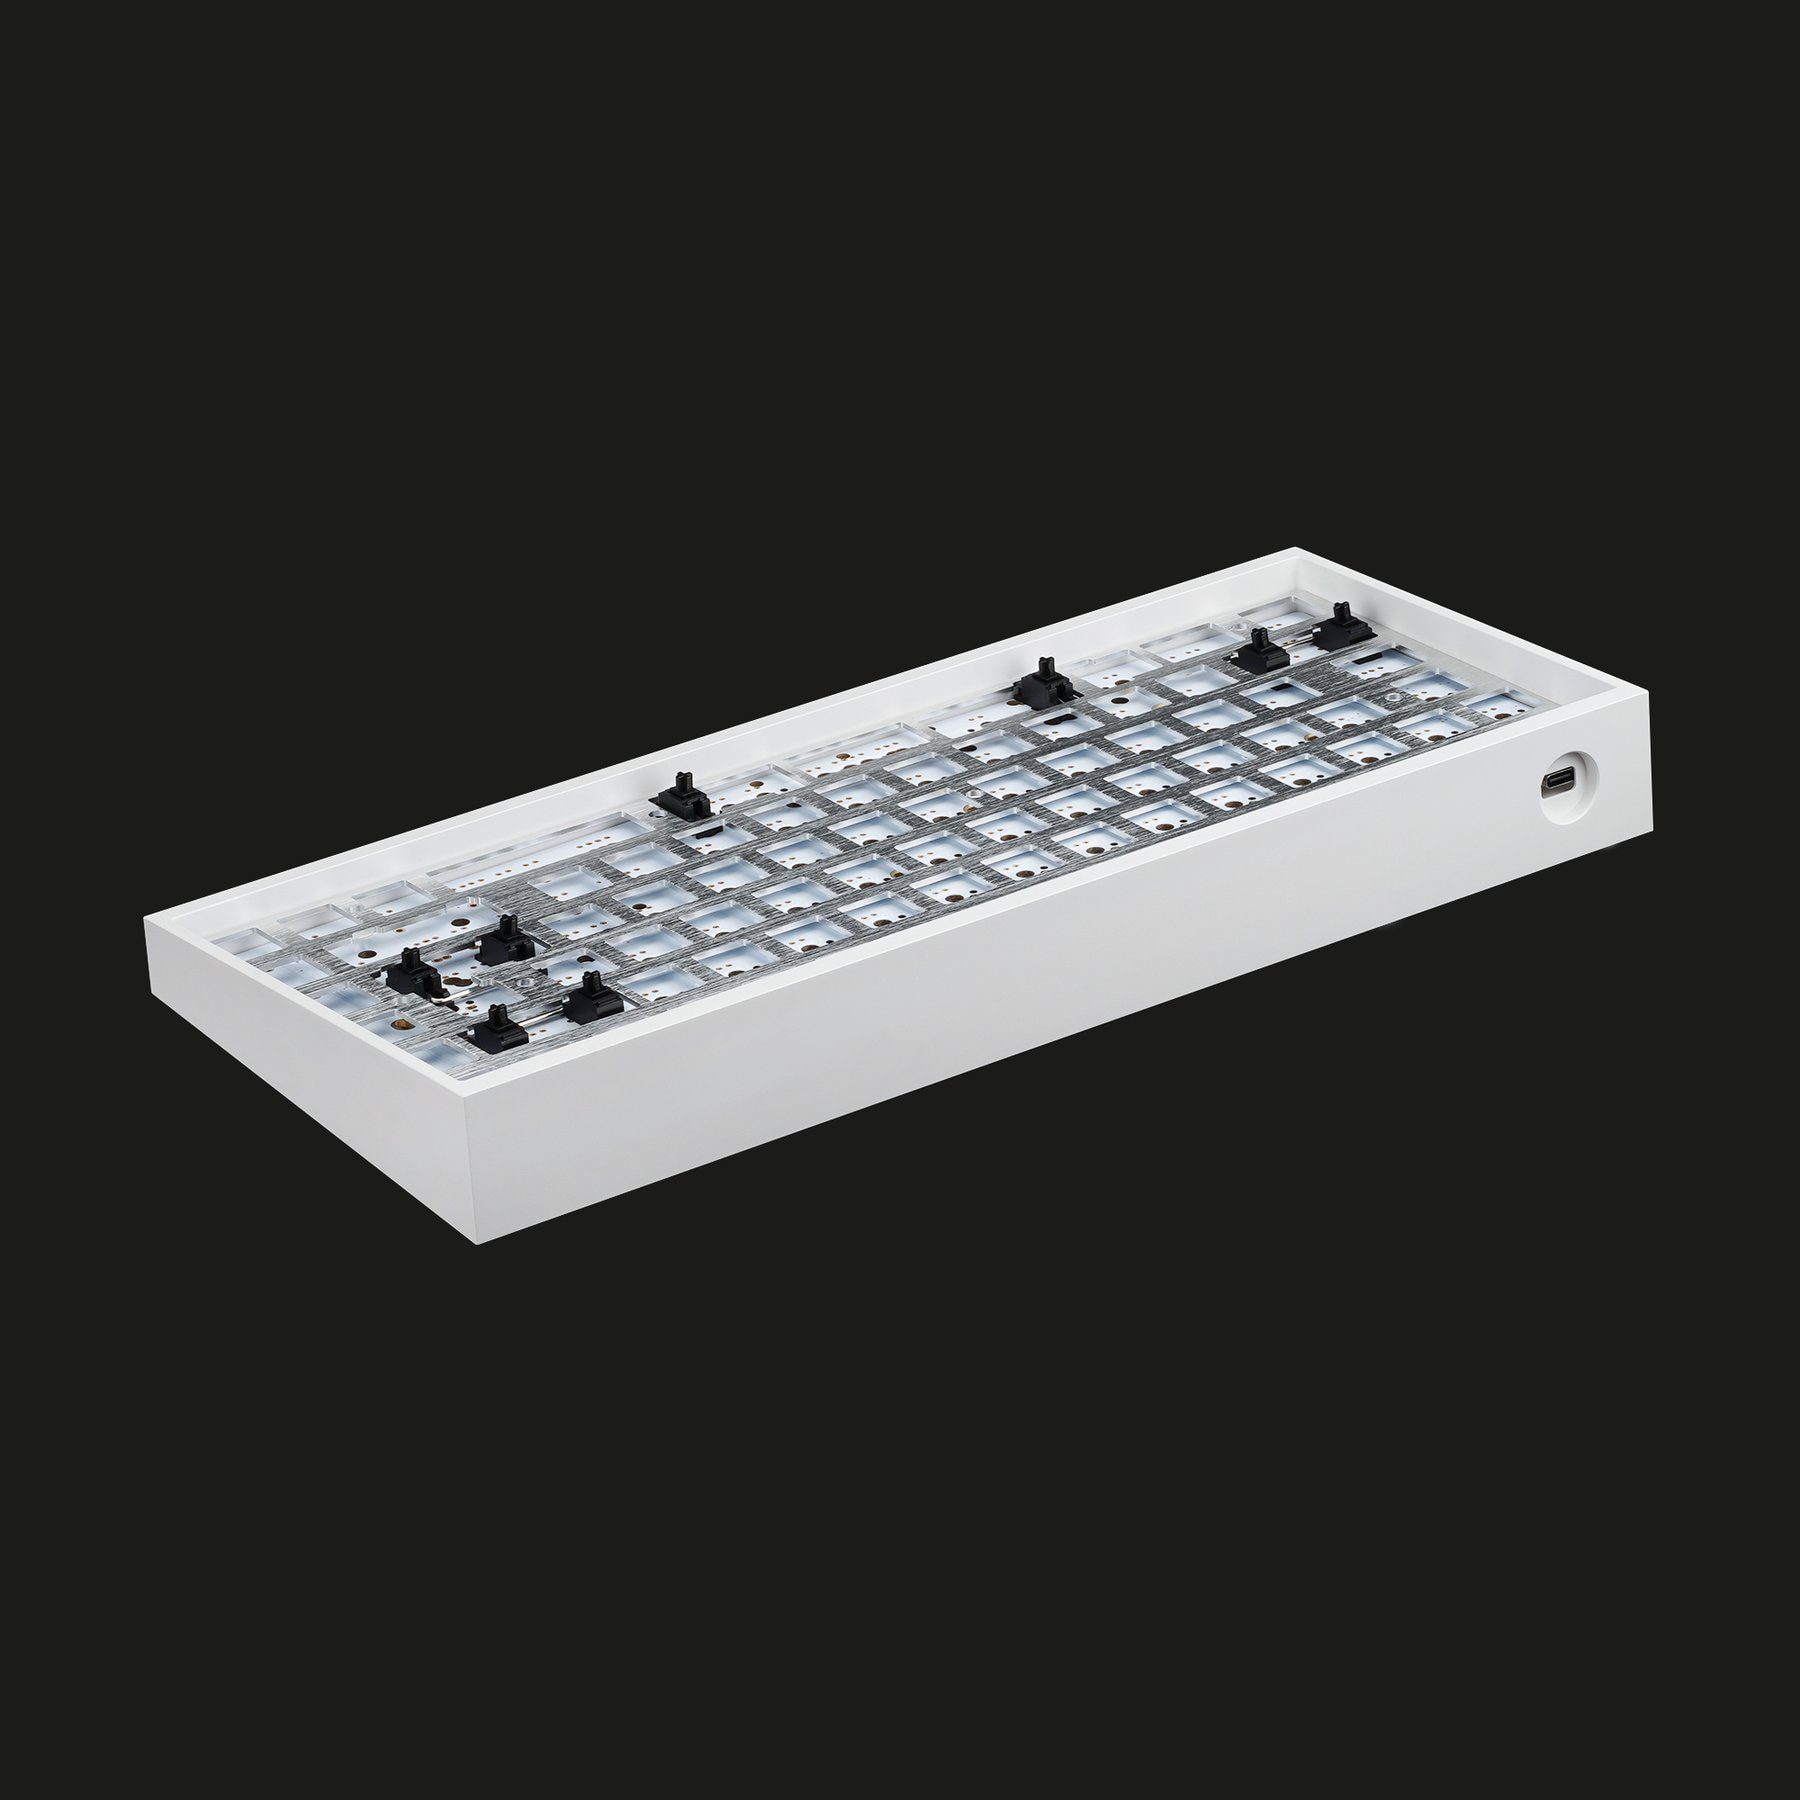 KBDfans Tofu84 Solderable 75% Mechanical Keyboard DIY KIT